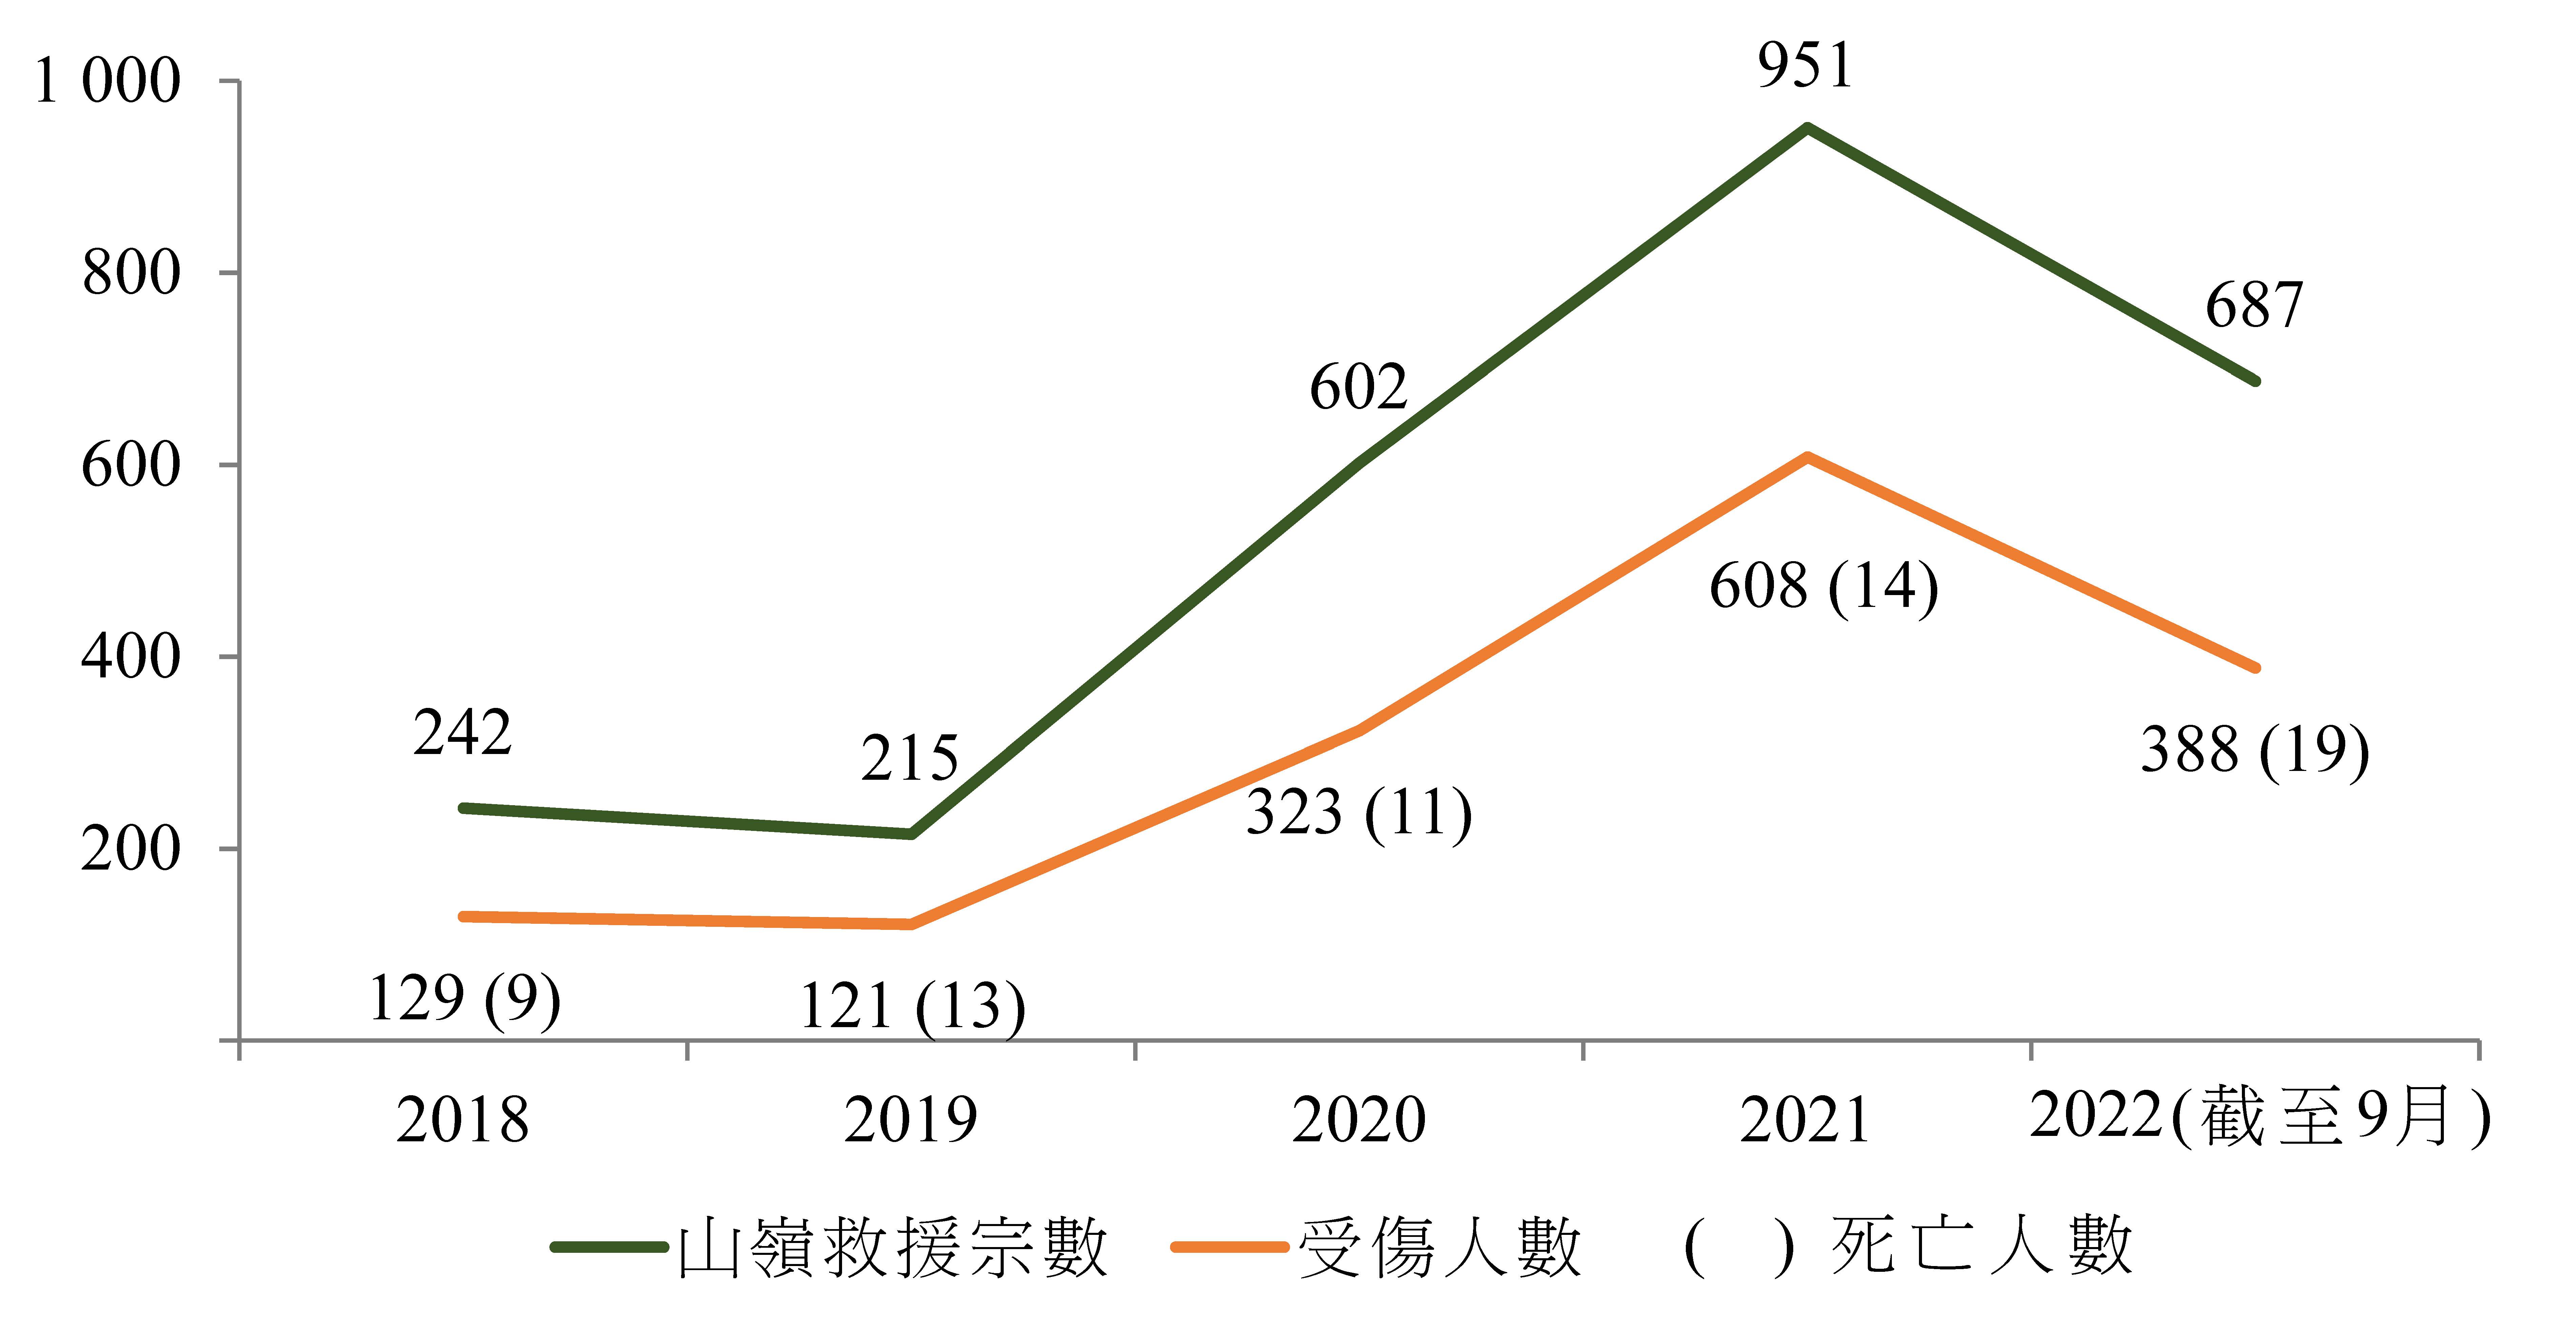 圖1 ── 2018年至2022年間香港的山嶺救援宗數與傷亡人數